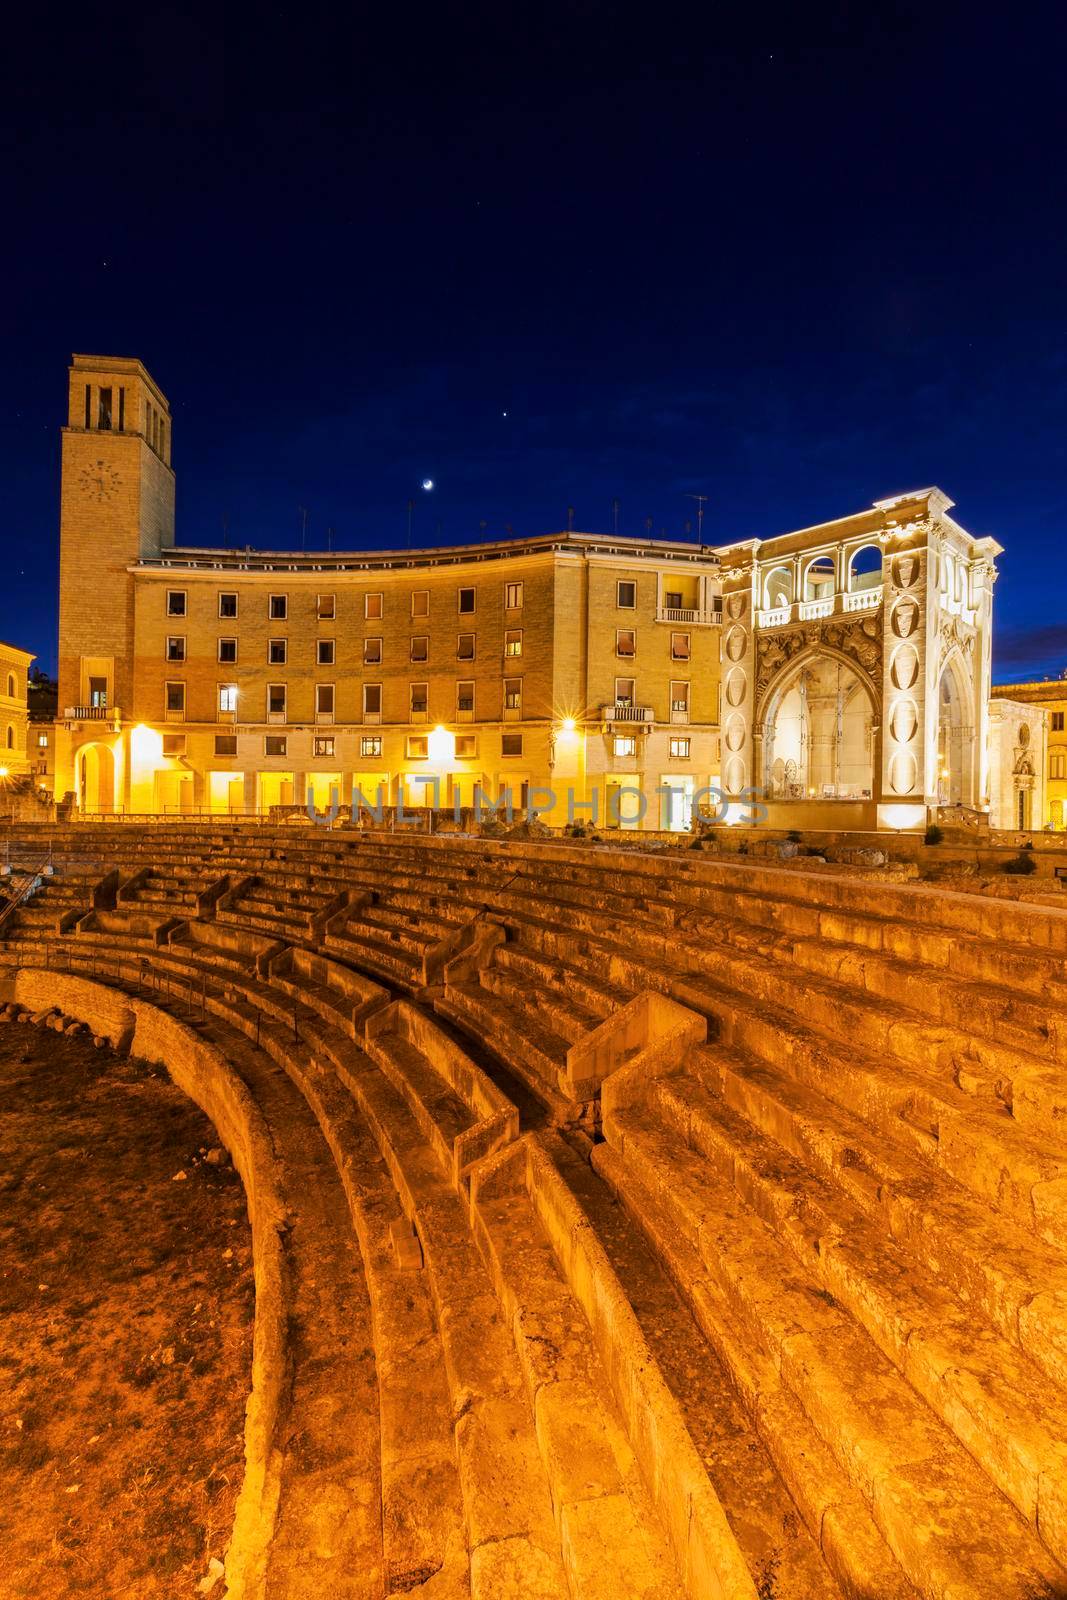 Piazza Santo Oronzo and Anfiteatro Romano in Lecce by benkrut